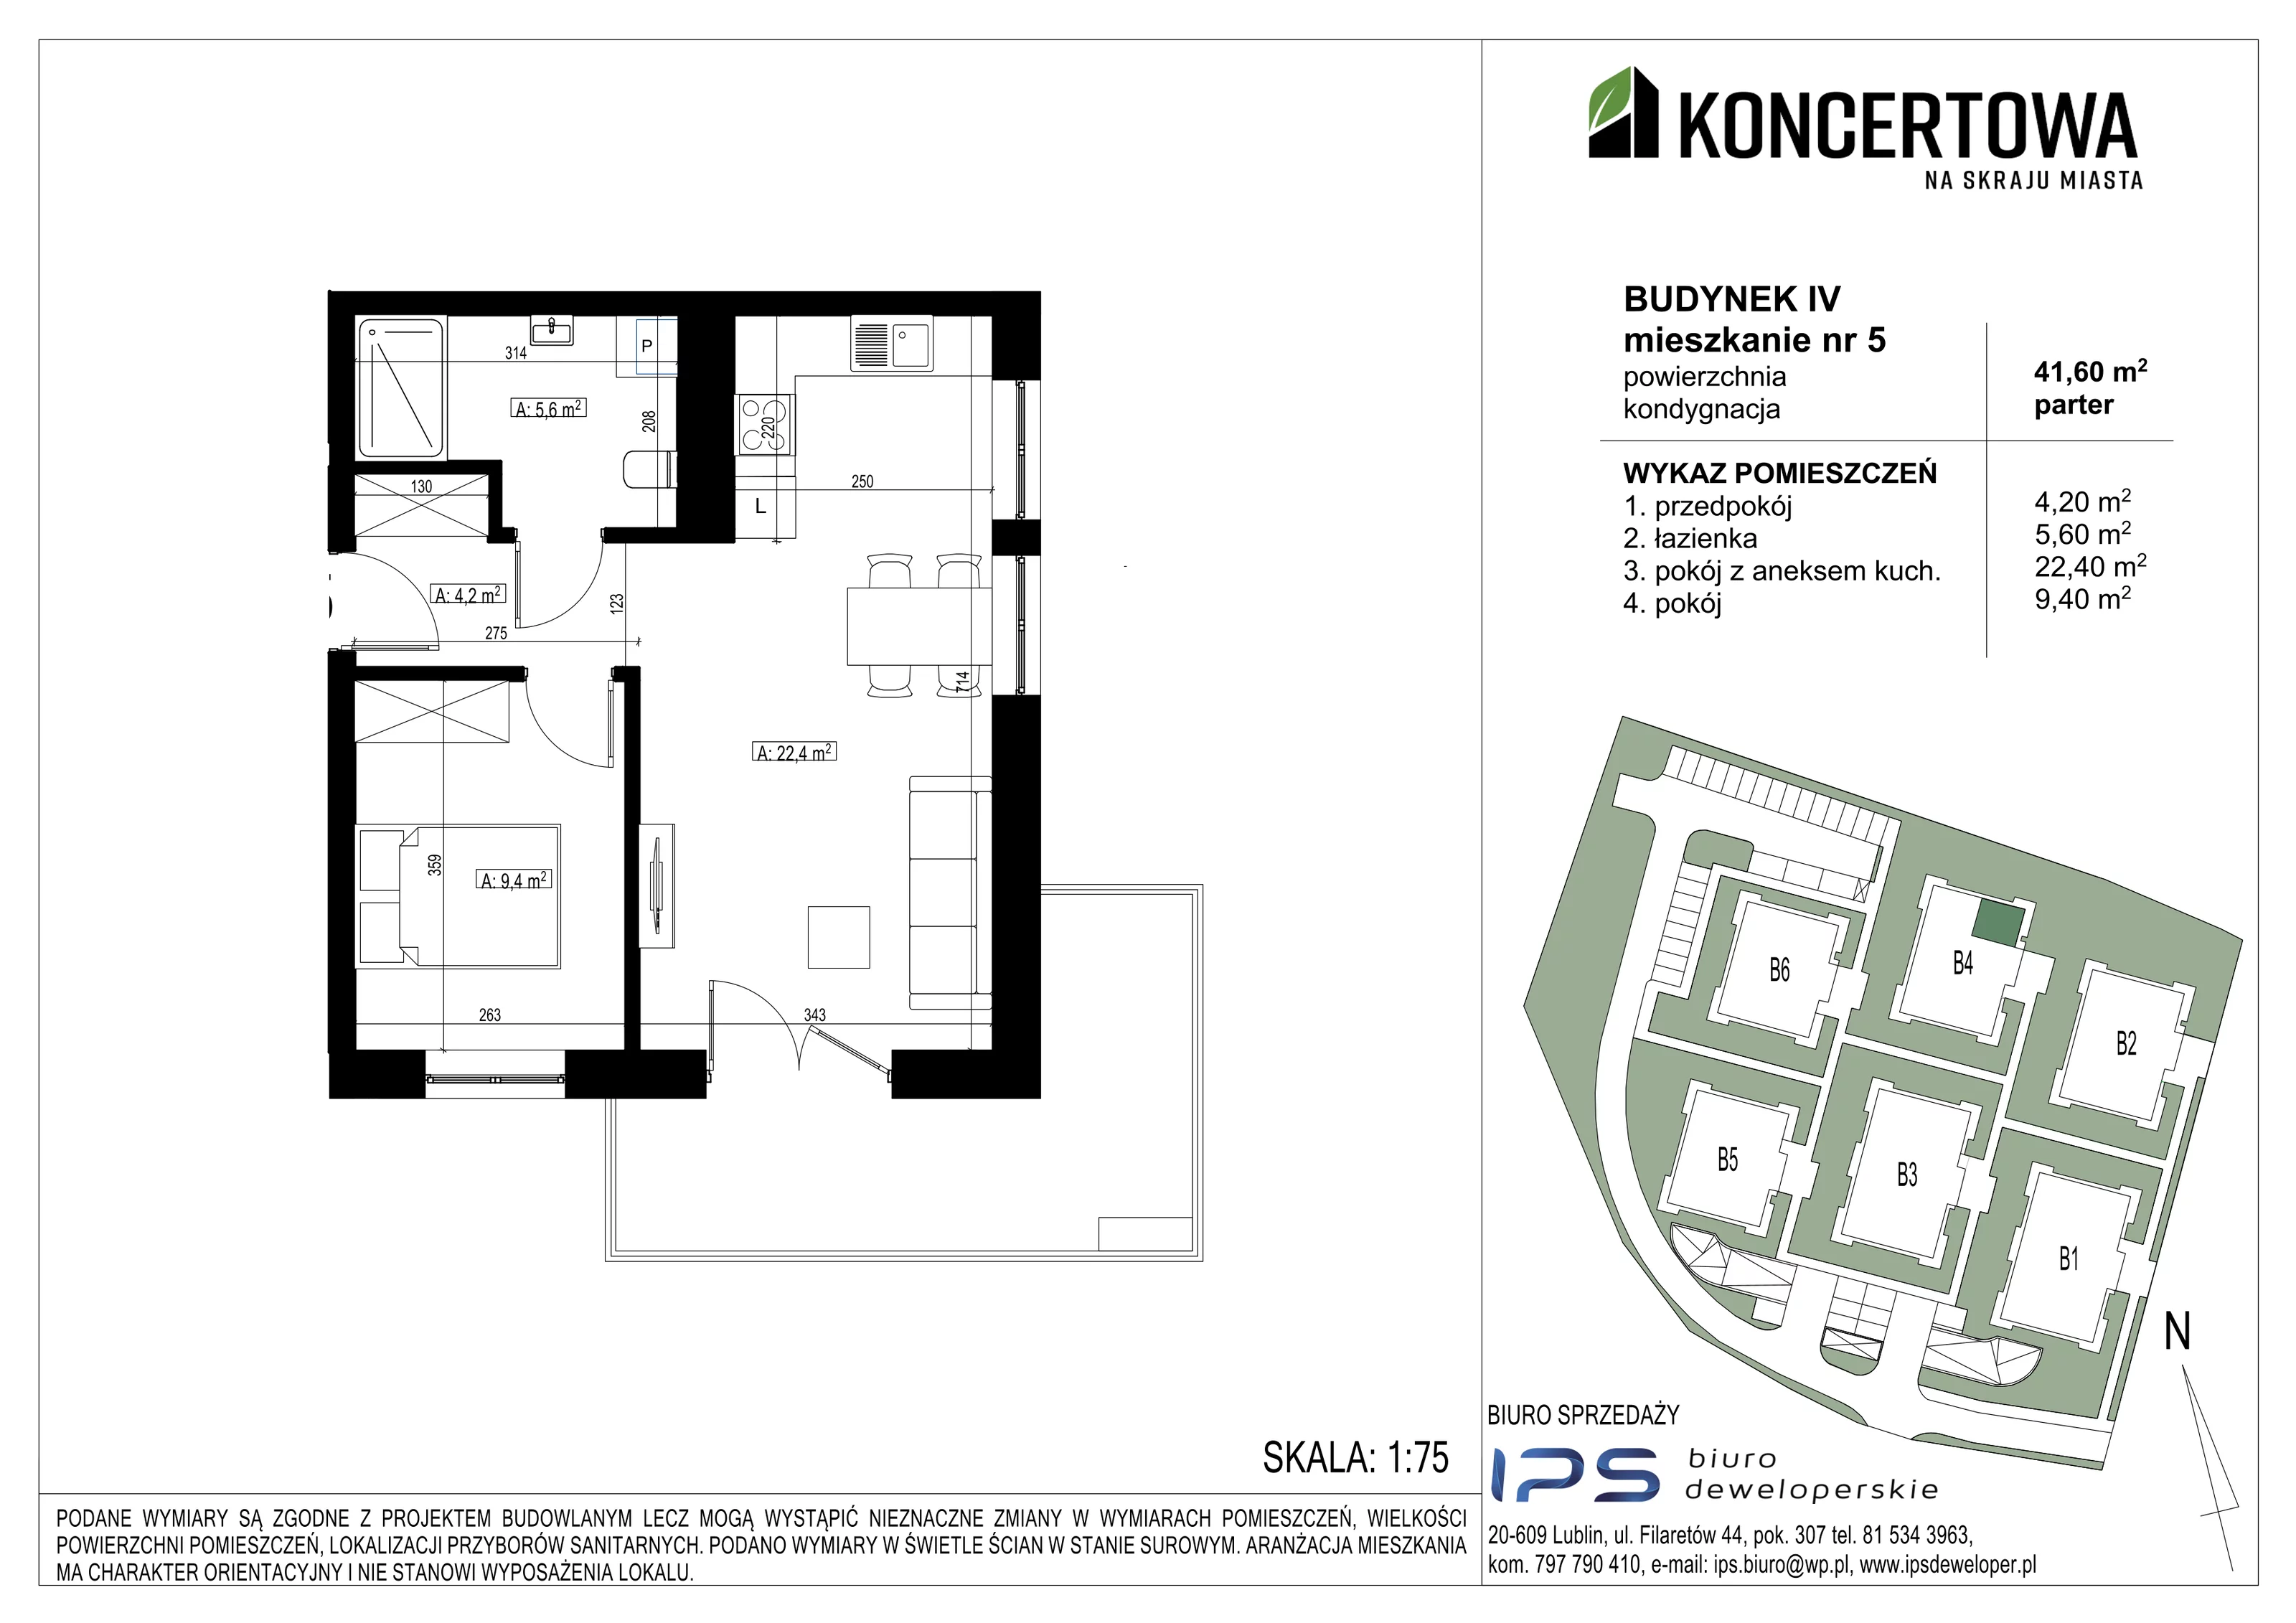 Mieszkanie 41,60 m², parter, oferta nr 2_IV/5, KONCERTOWA - Na skraju miasta, Lublin, Czechów Północny, Czechów Północny,  ul. Koncertowa